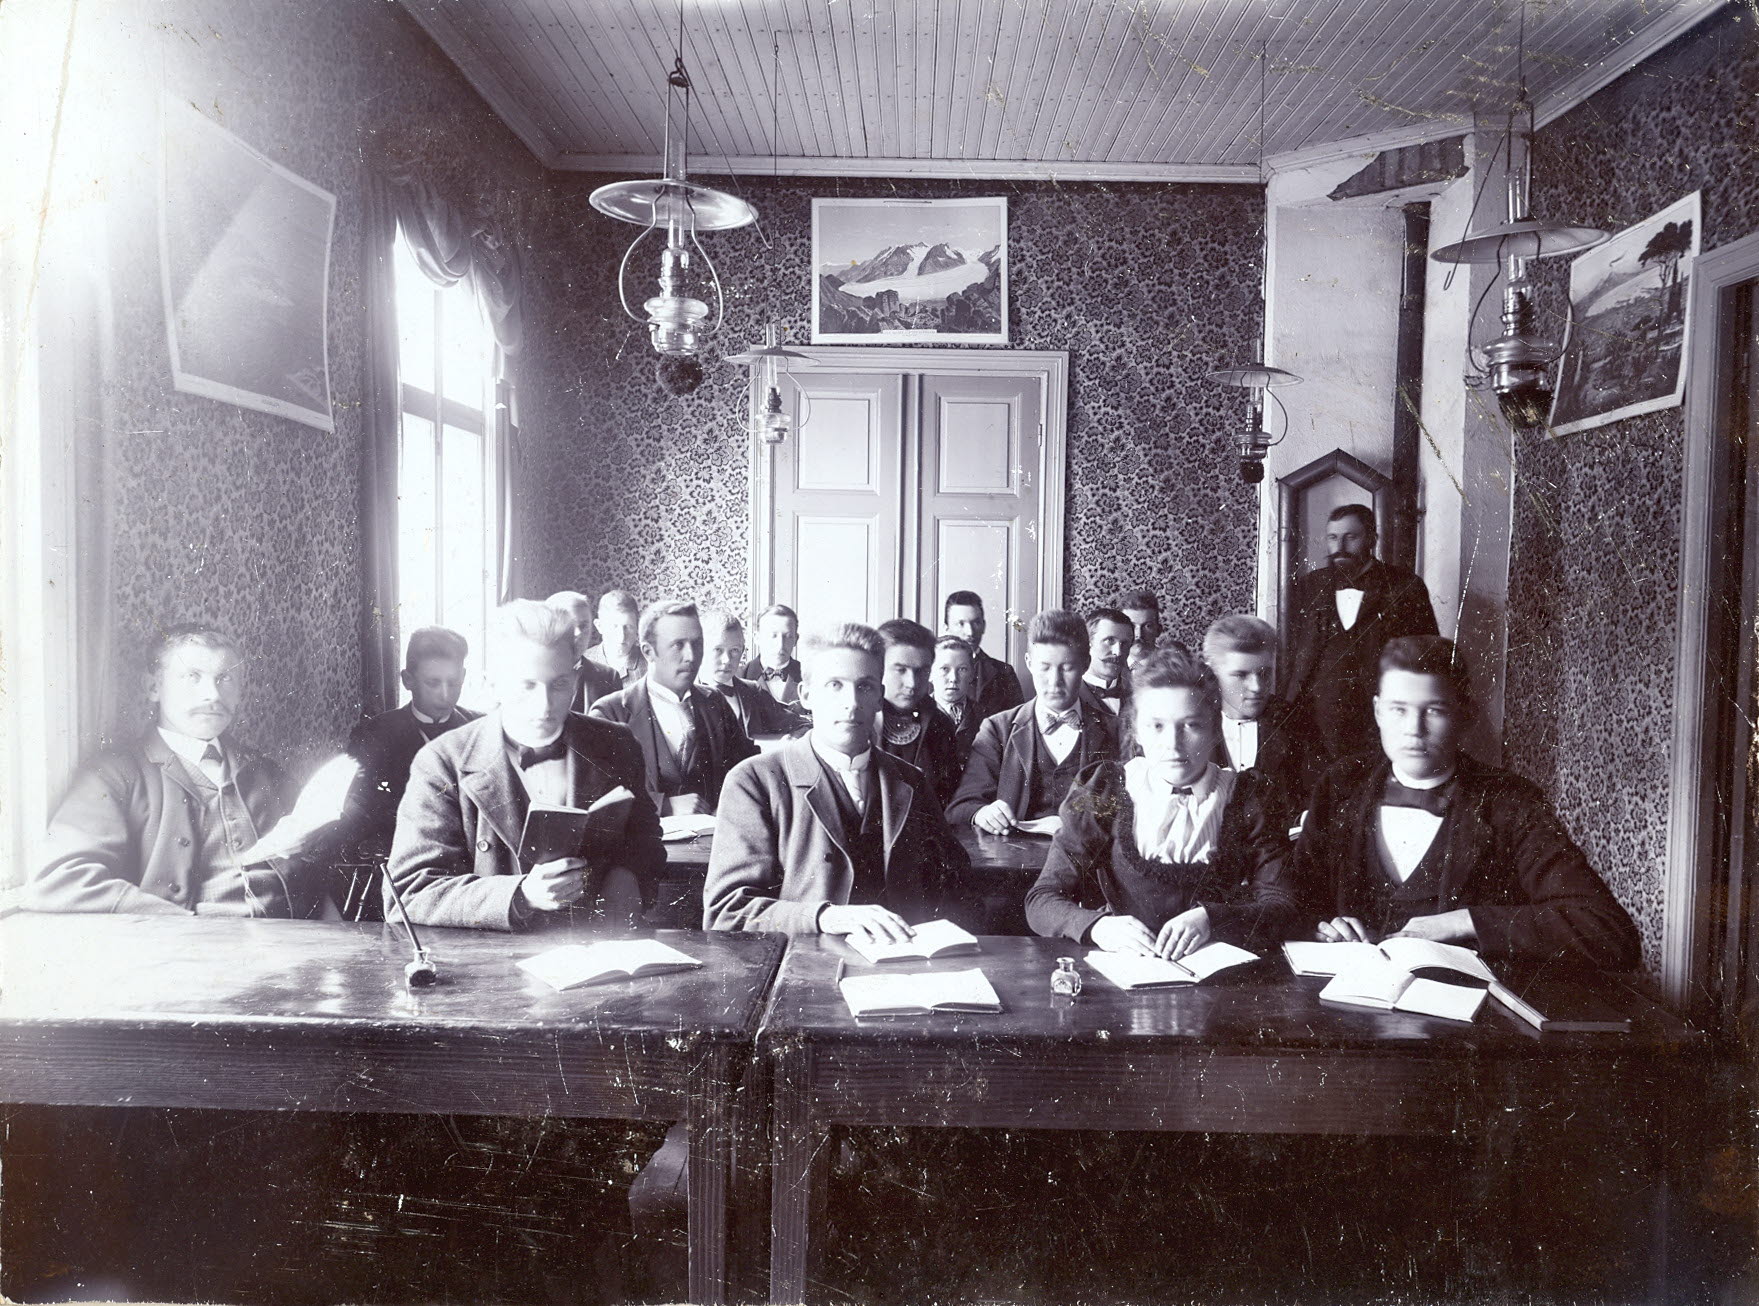 Studerande elever i en gammeldags lektionssal med kakelugn och en fotogenlampa i taket.